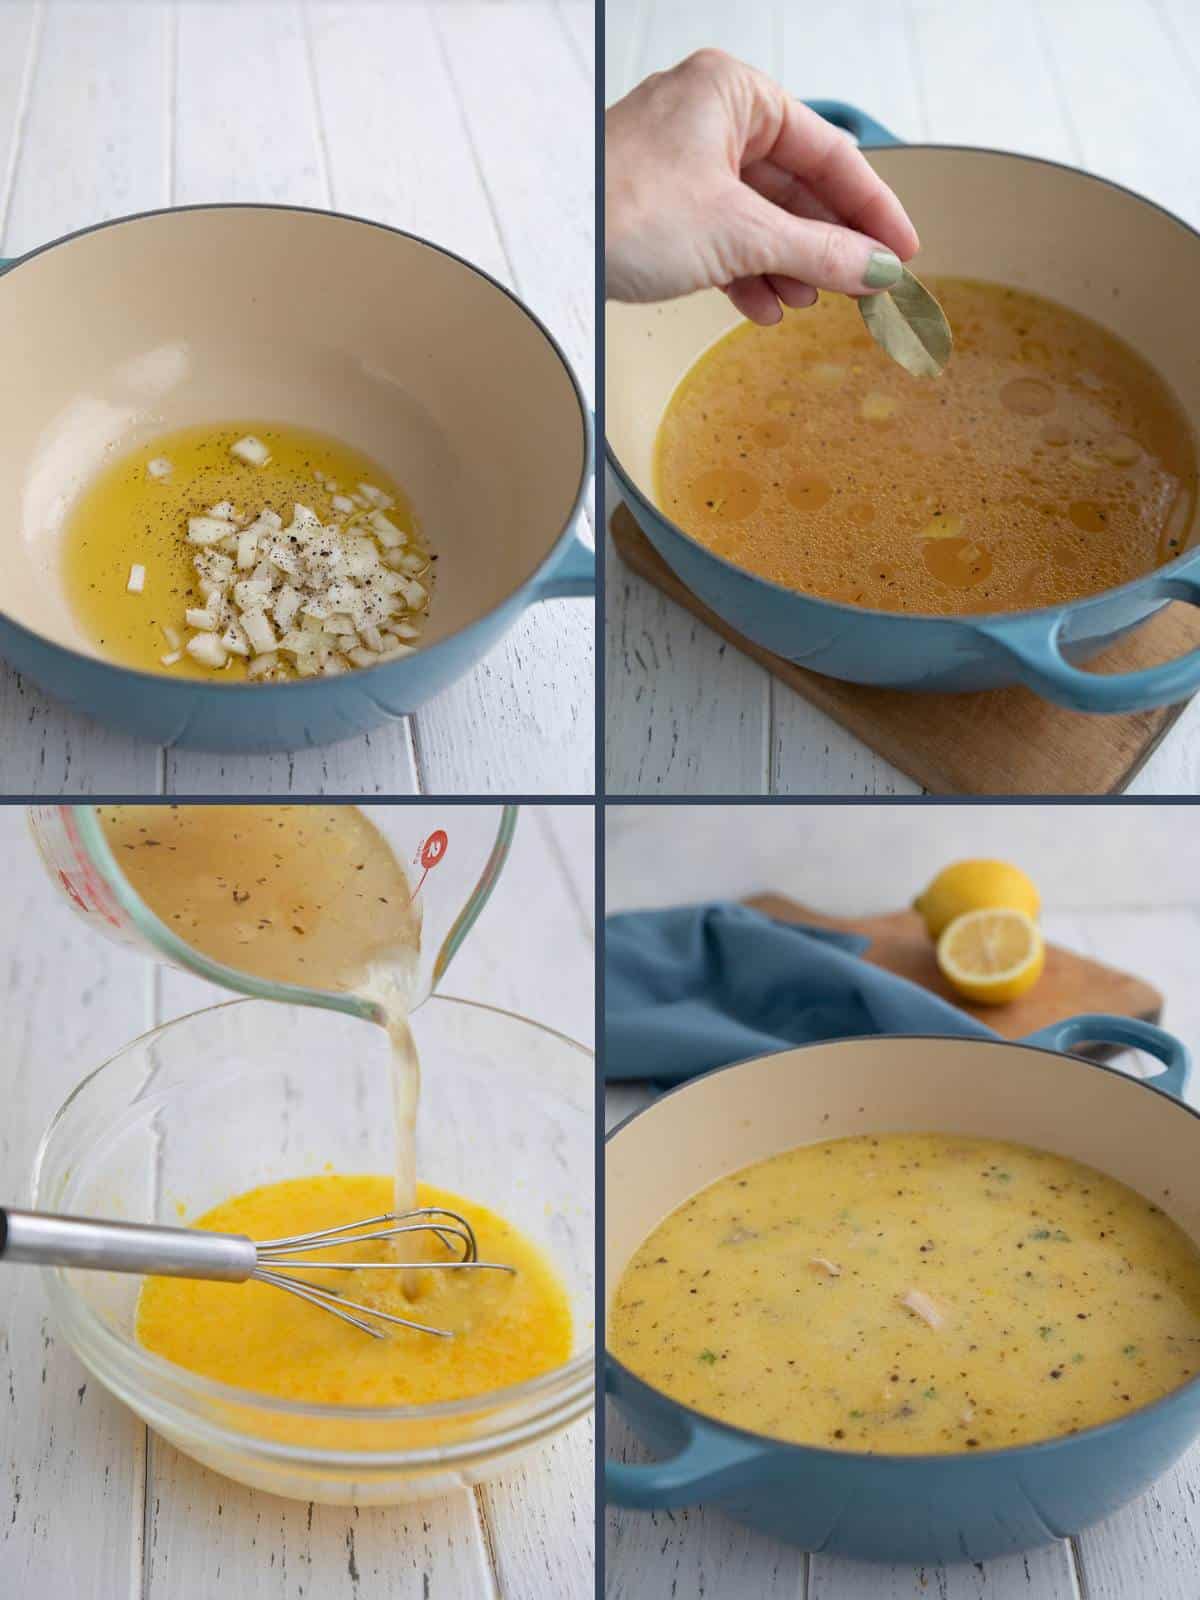 How to make Lemon Chicken Soup (Avglemono)